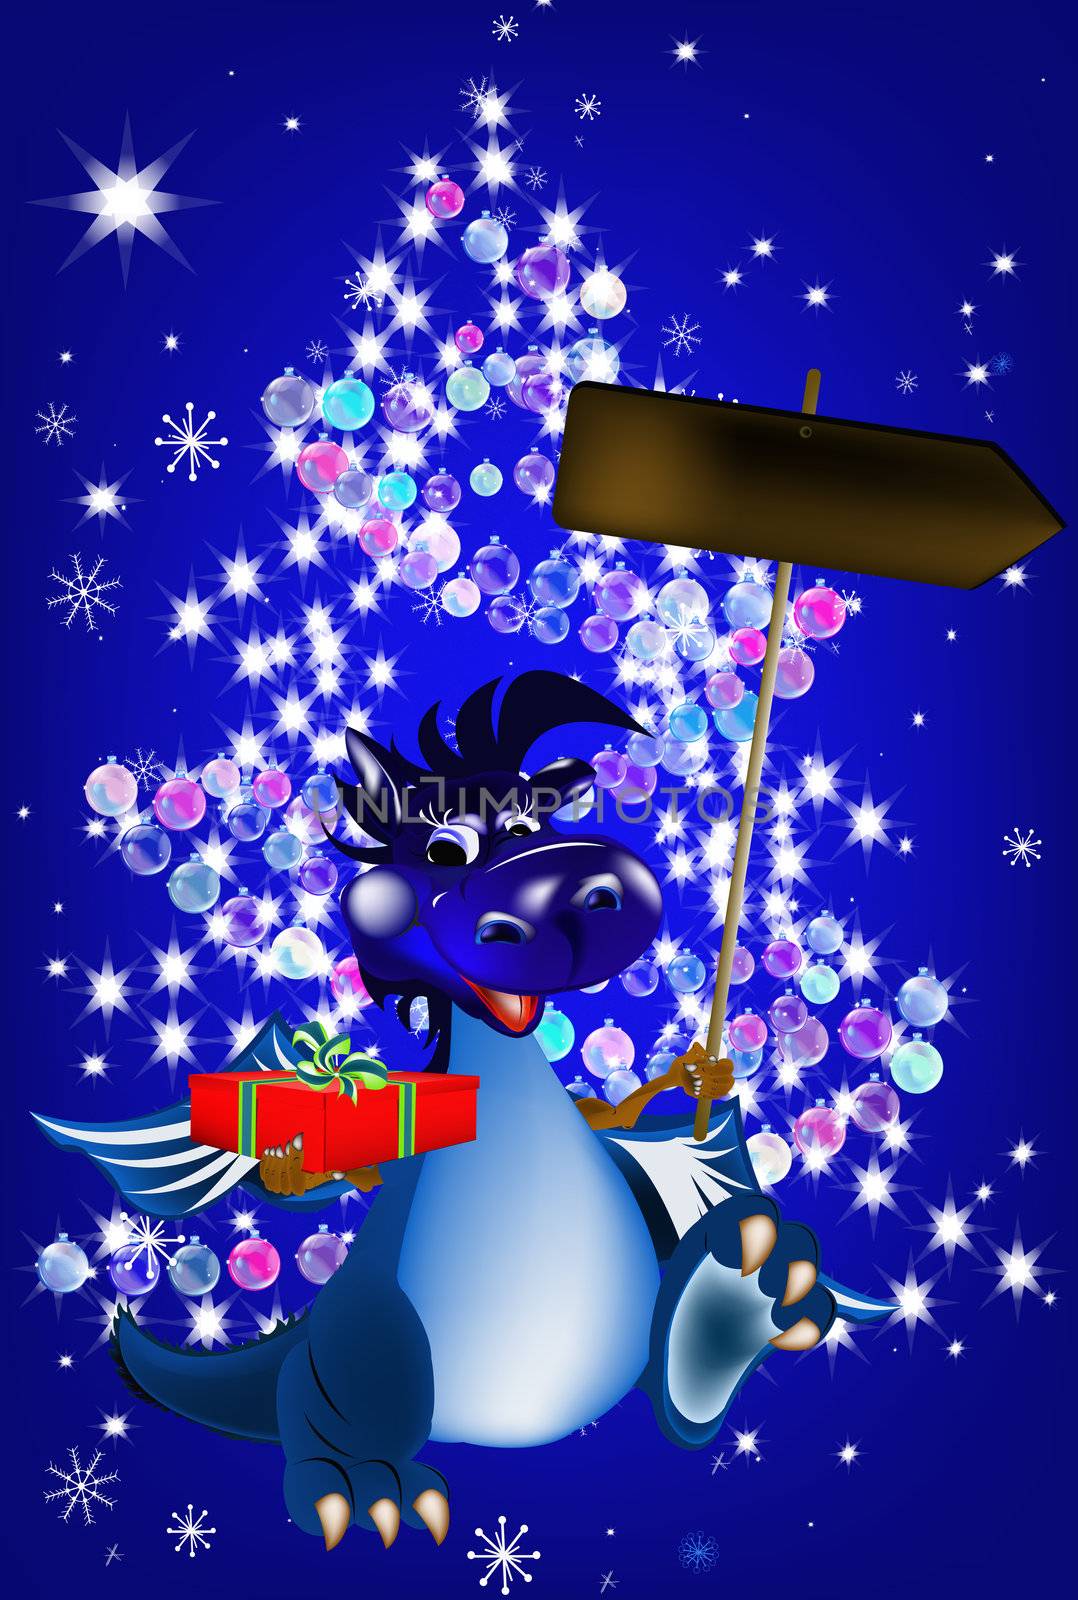 Dark blue dragon a symbol of new 2012 by sergey150770SV